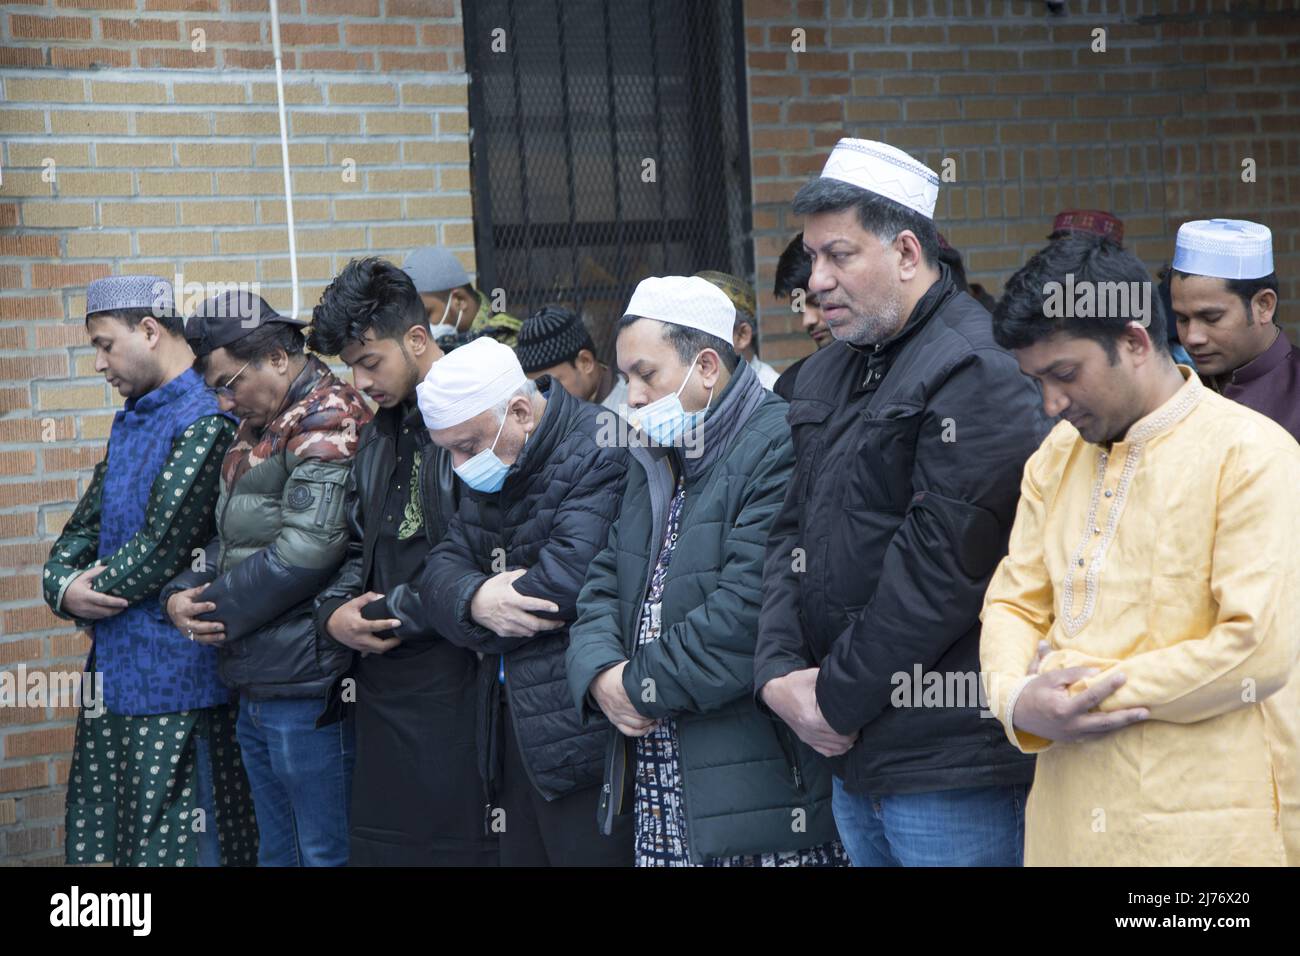 Des hommes musulmans prient sur Eid à l'extérieur d'une mosquée de Brooklyn, NY, dans le quartier de Kensington « Little Bangladesh ». EID al-Fitr 'fête de la rupture du jeûne') est une fête religieuse importante célébrée par les musulmans dans le monde entier qui marque la fin du Ramadan, le mois Saint islamique du jeûne (scim). Banque D'Images